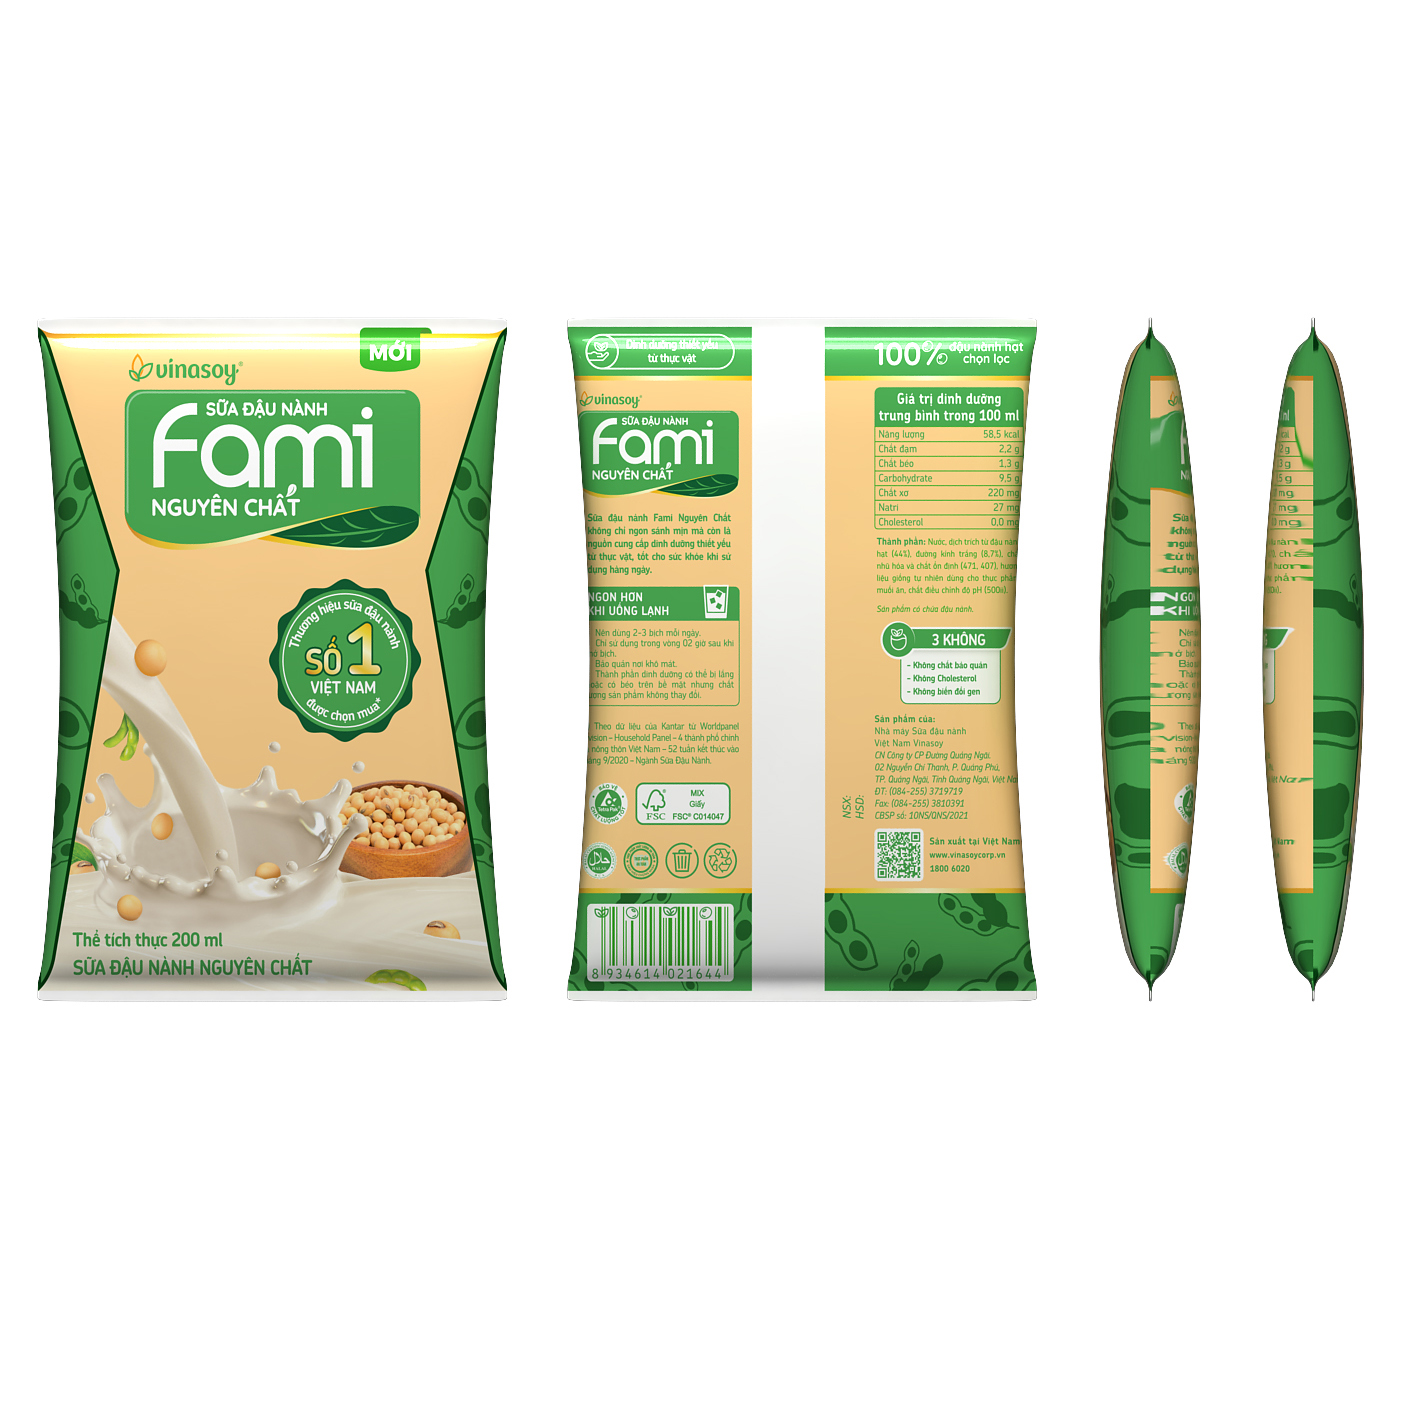 Thùng sữa đậu nành Fami Nguyên chất cải tiến 2019 (40 bịch x 200ml)